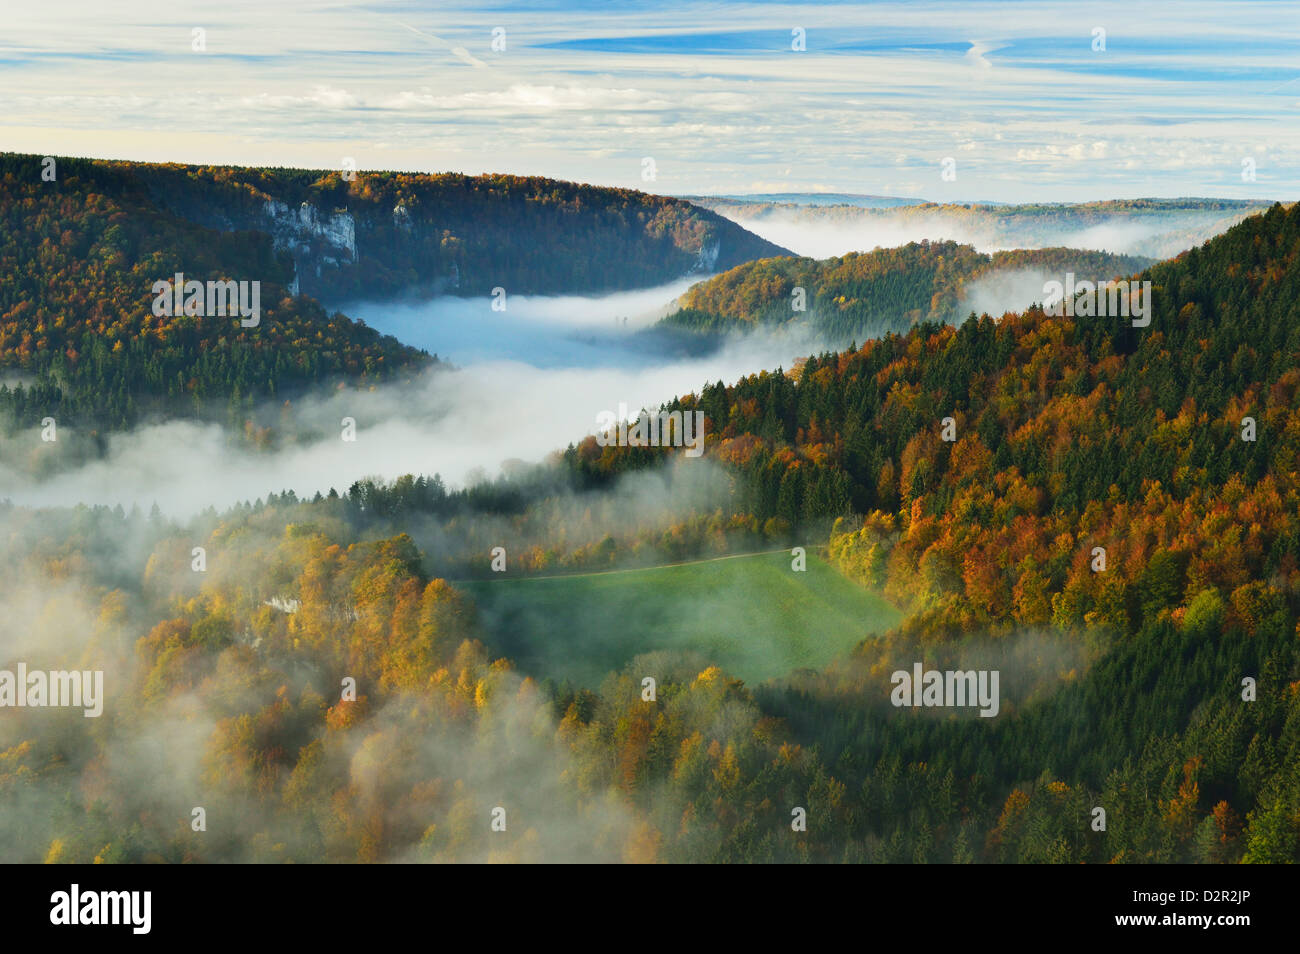 Vista desde Eichfelsen del Donautal (Valle del Danubio), cerca de Beuron, Baden-Wurttemberg, Alemania, Europa Foto de stock